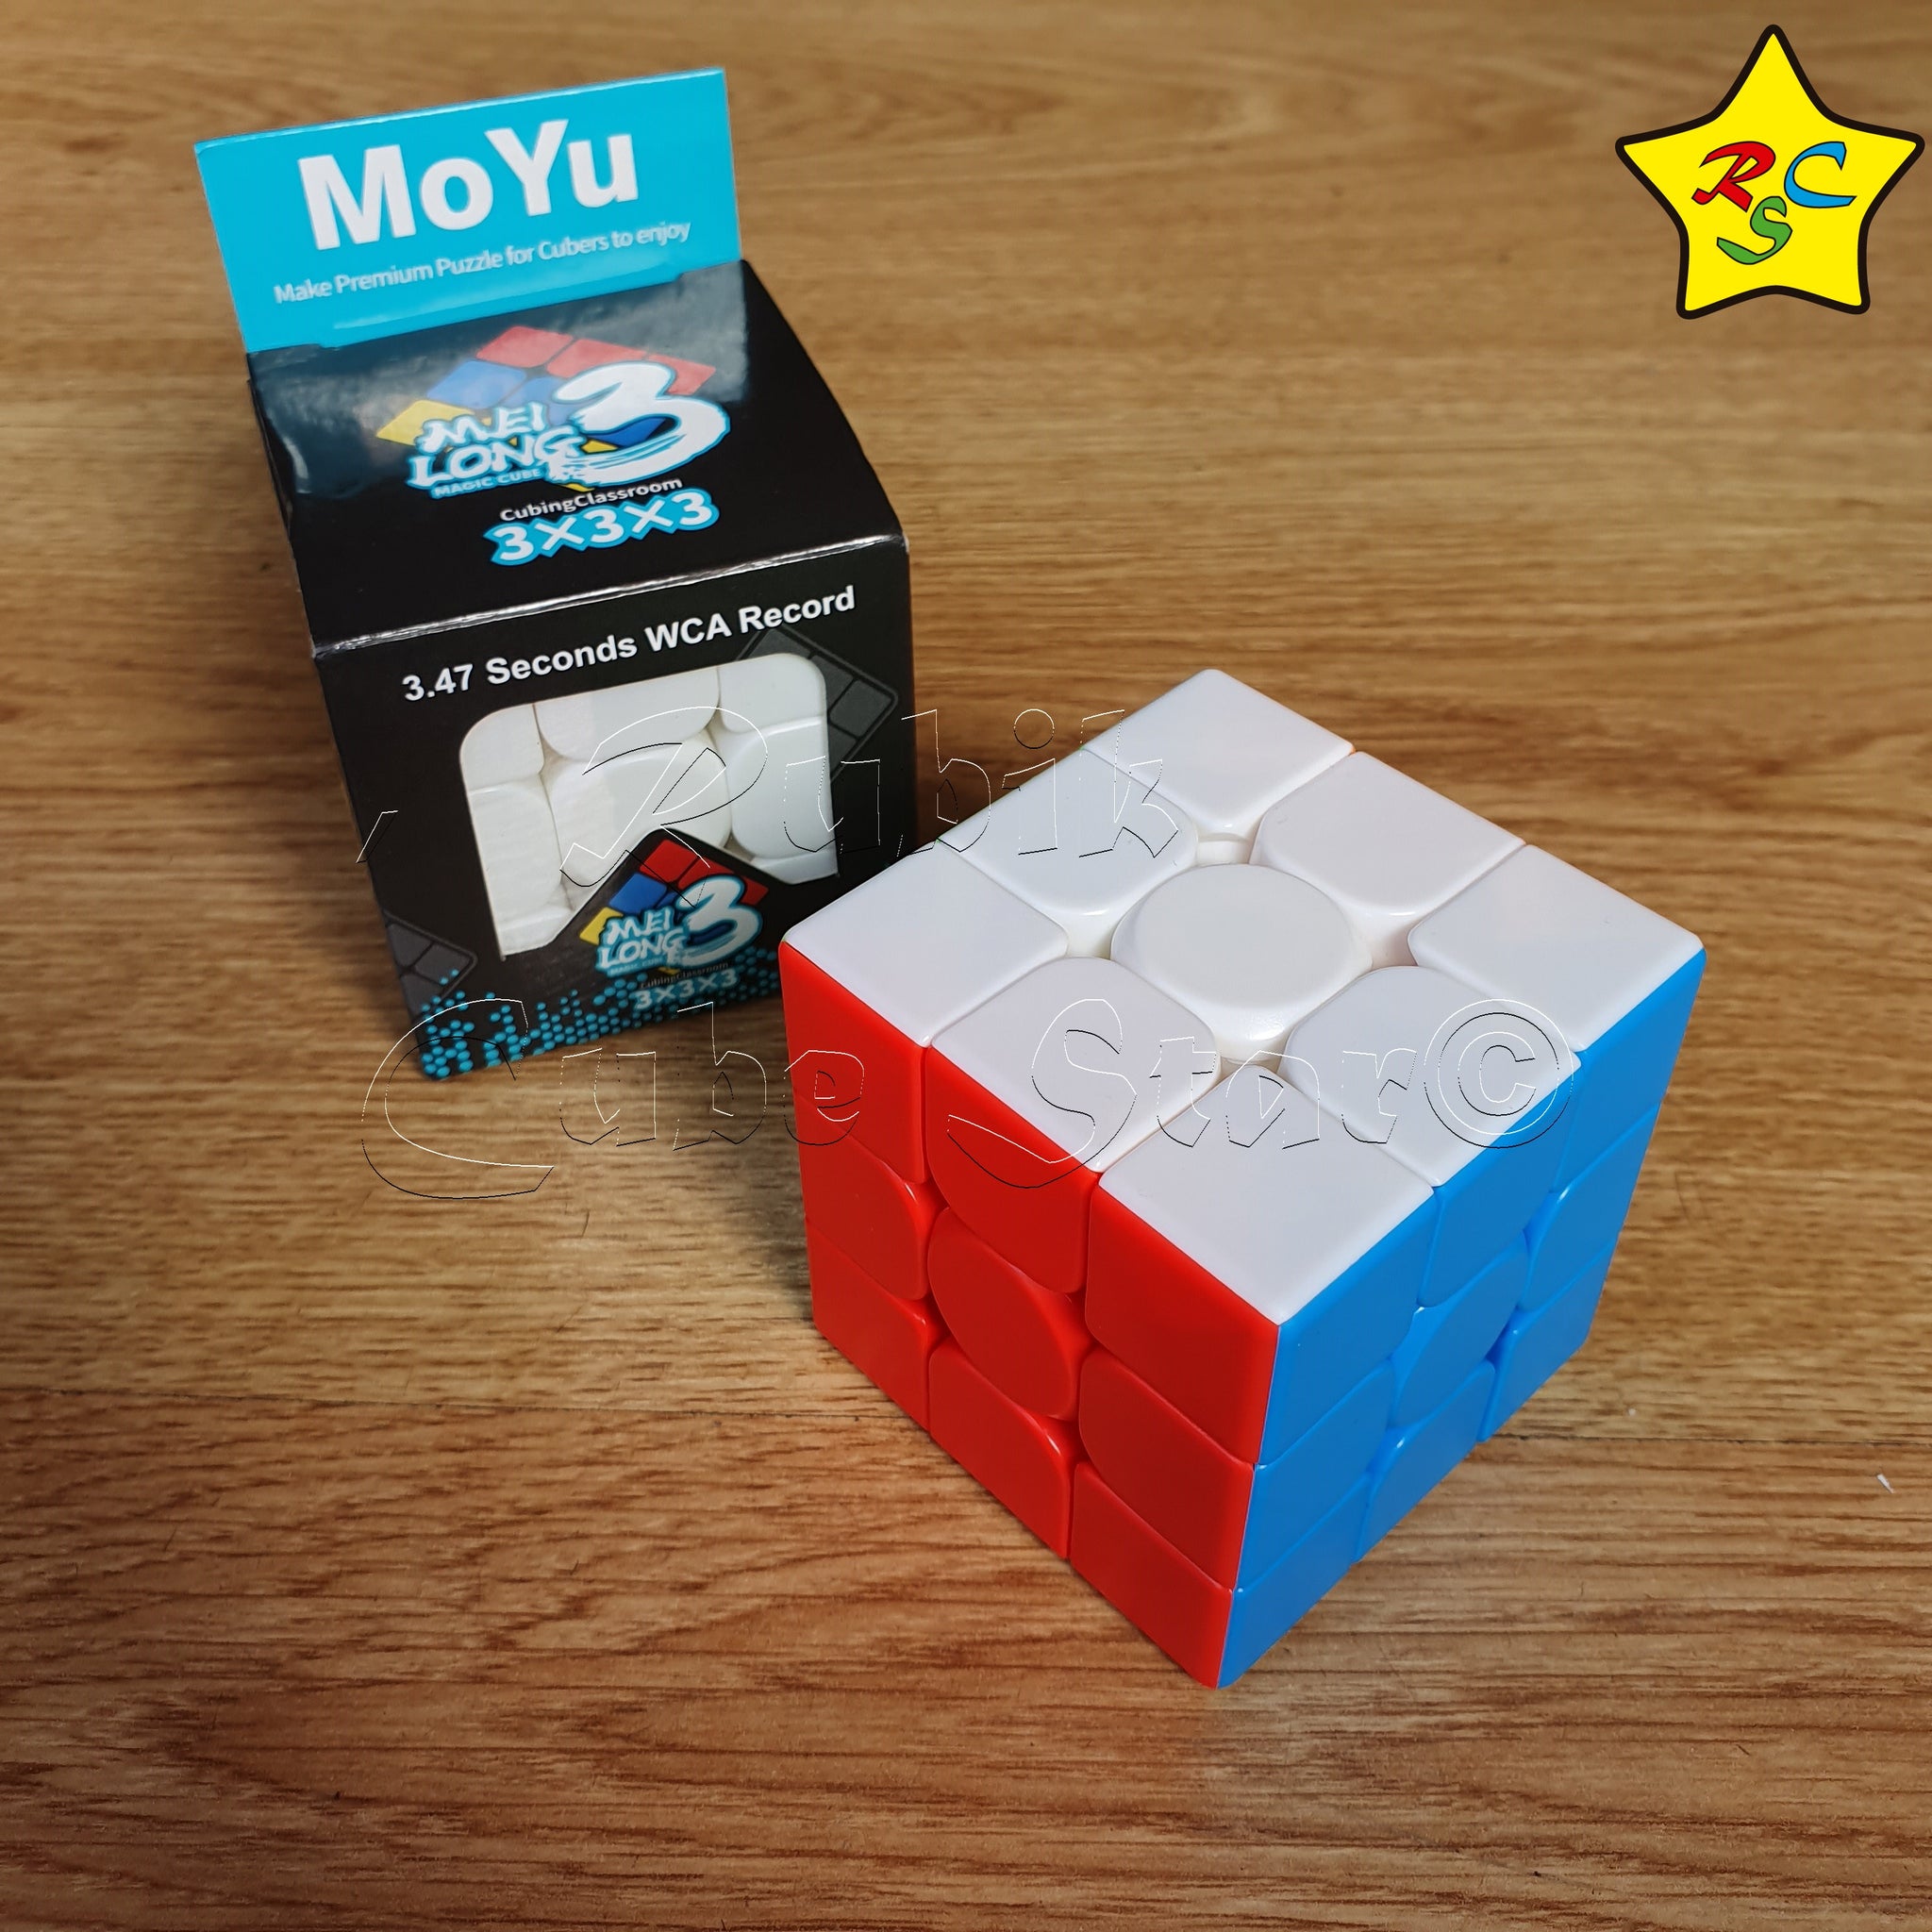 Tipos Cubos De Rubik Cubo Rubik 3x3 Meilong Moyu Speedcube Gama Warrior Velocidad – Rubik Cube  Star